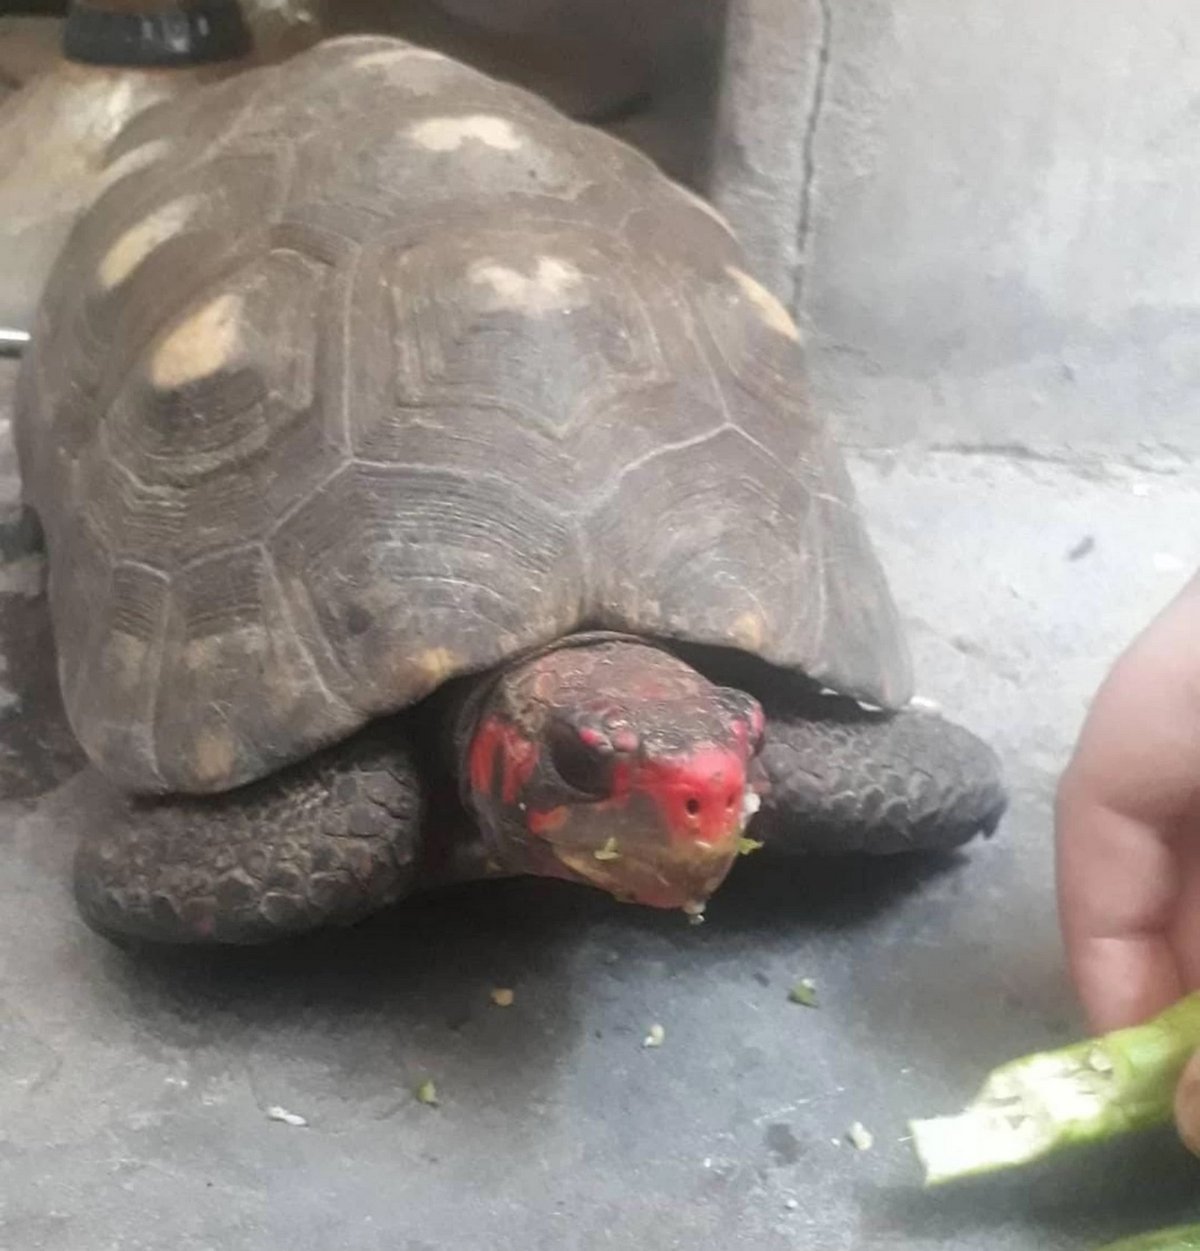 Une tortue disparue depuis 30 ans retrouvée dans un grenier en vie et en bonne santé